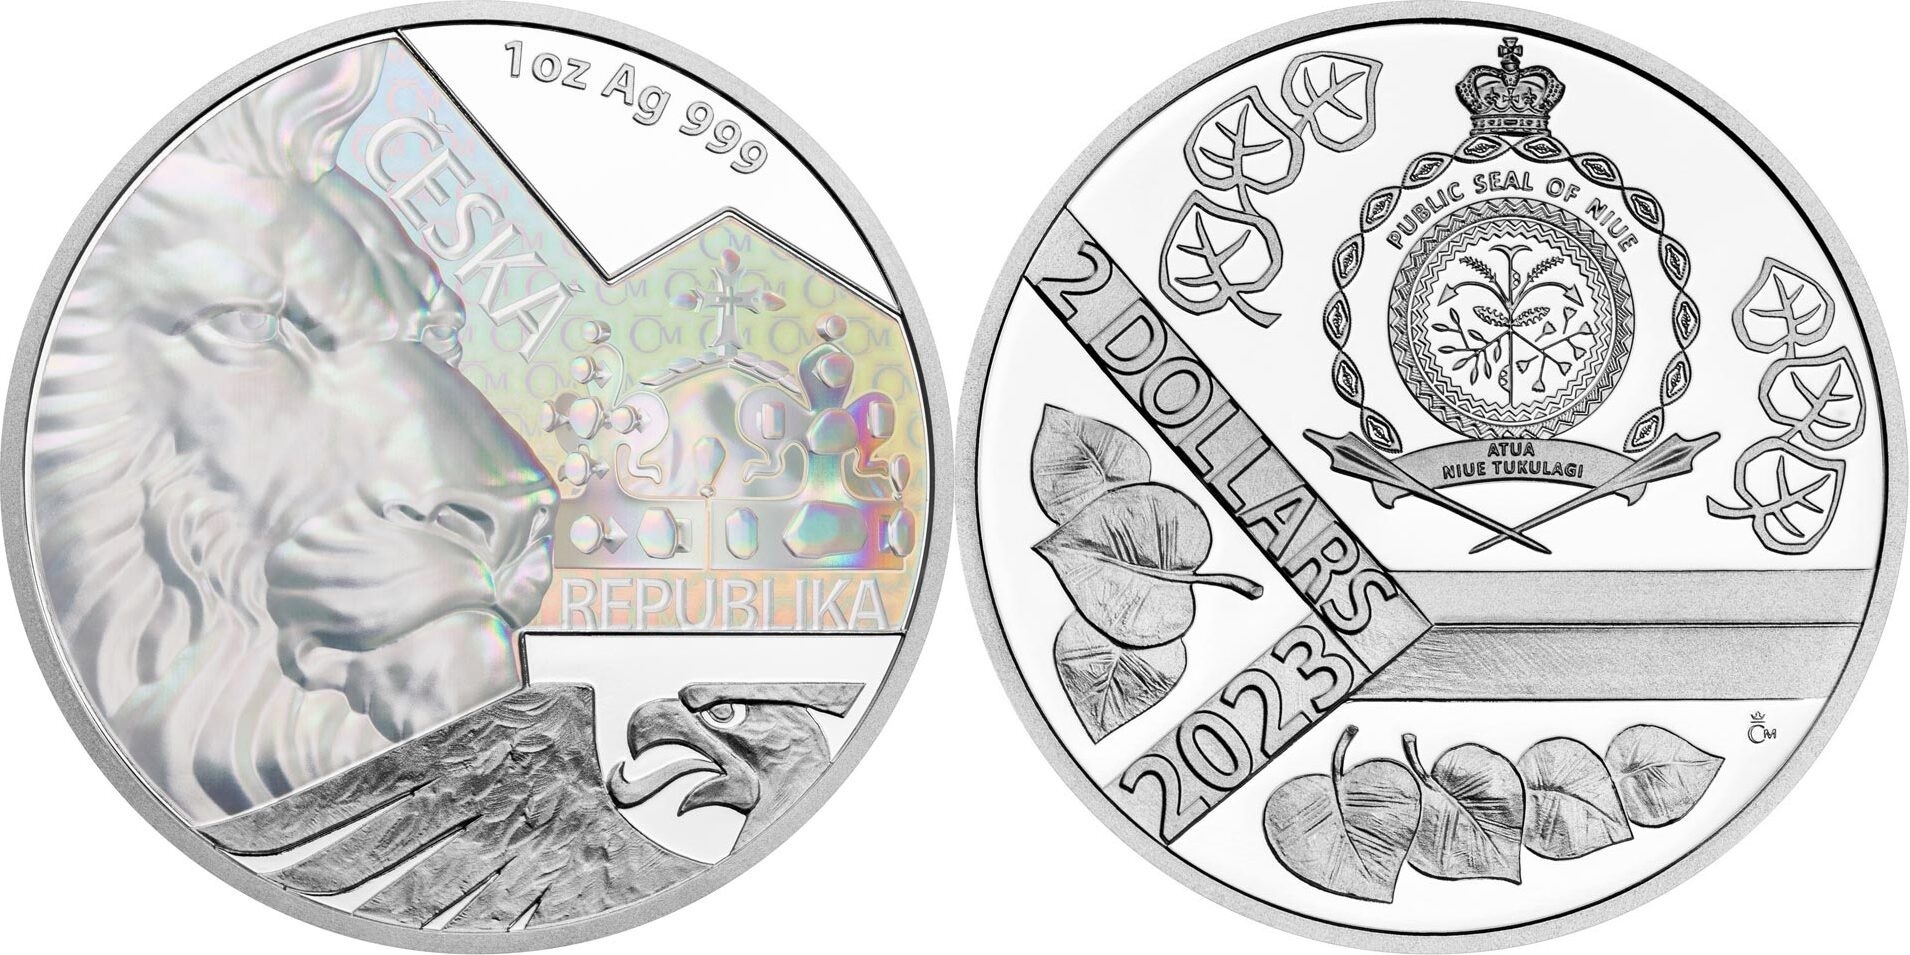 (W160.2.D.2023.76384-751) 2 Dollars Niue 2023 1 oz Proof silver - Heraldic Czech Lion (zoom)